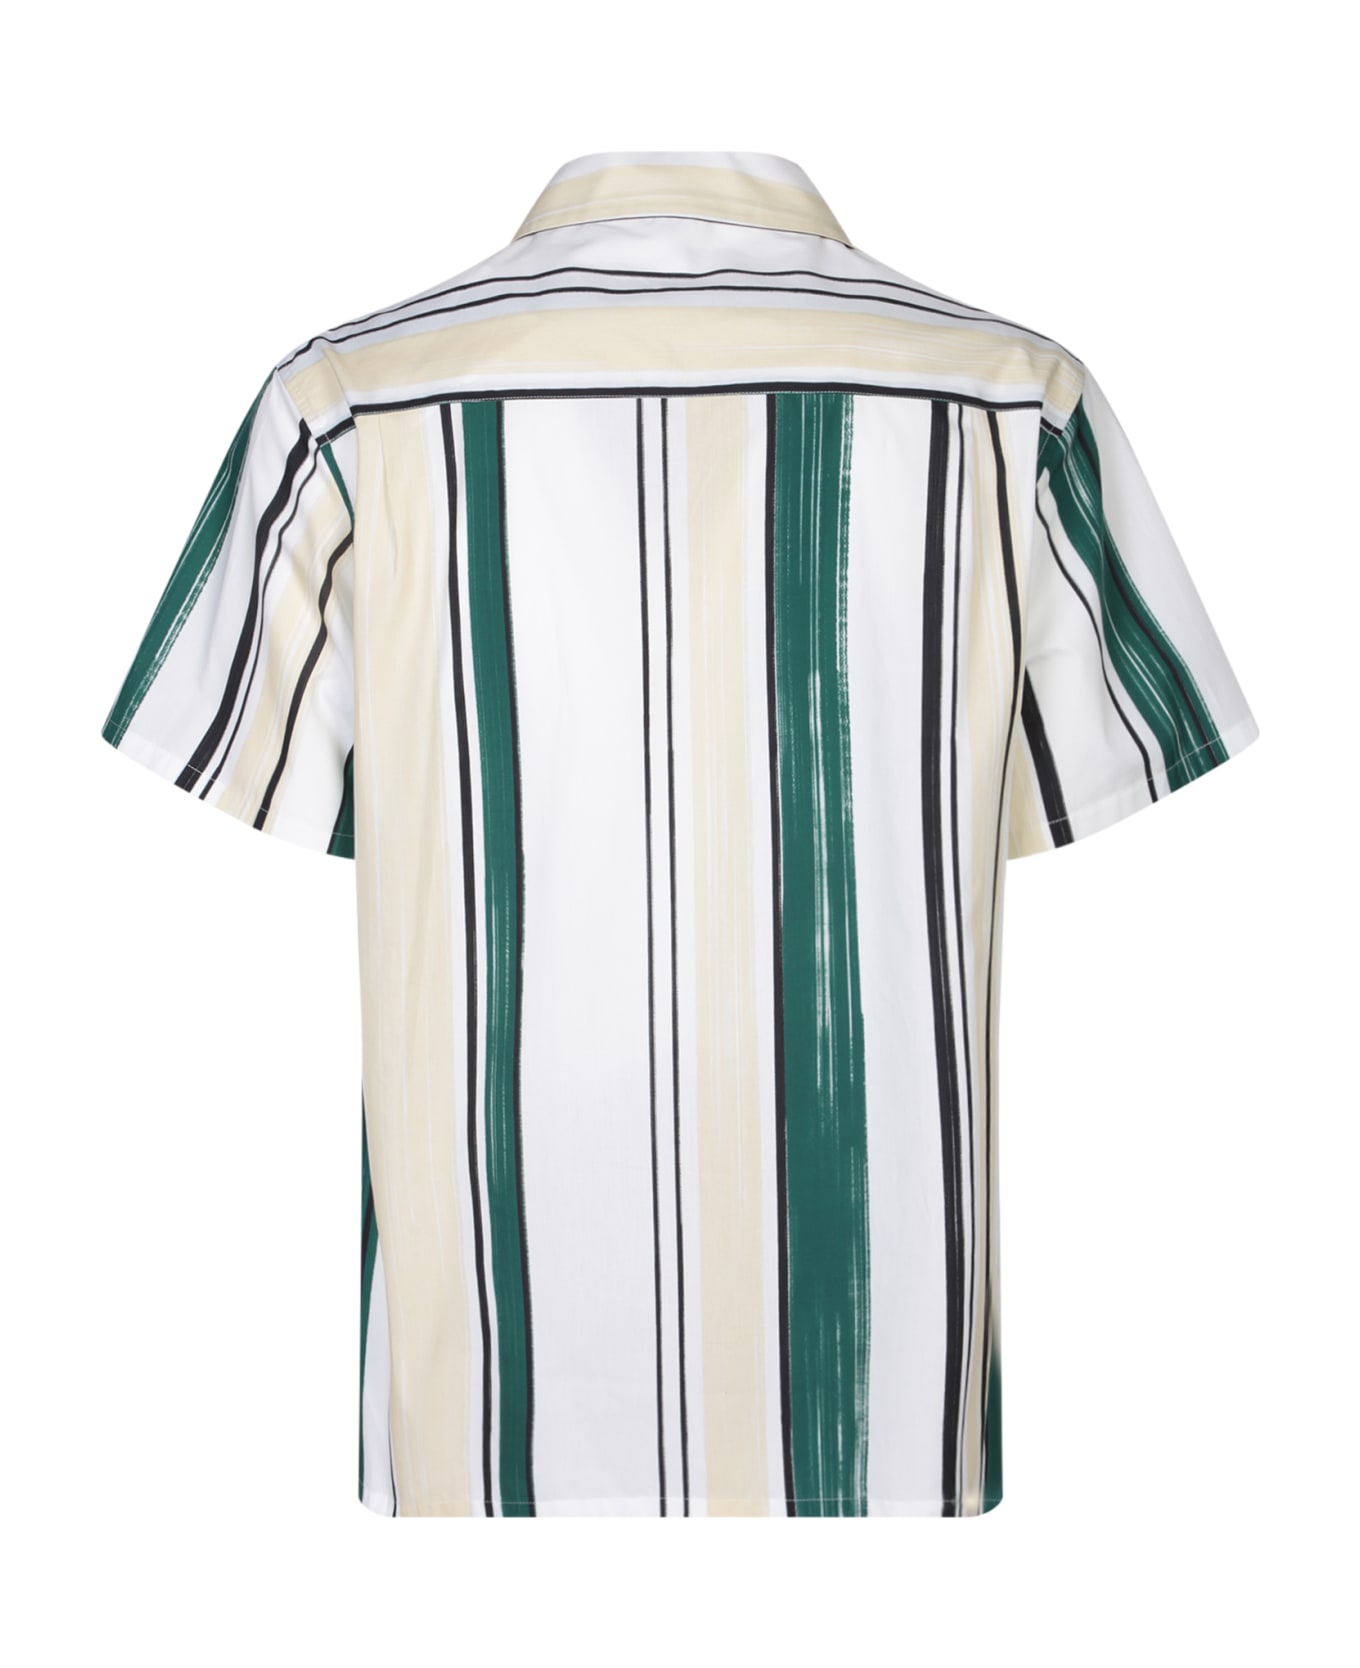 Lanvin Bowling White/green Shirt - Green シャツ